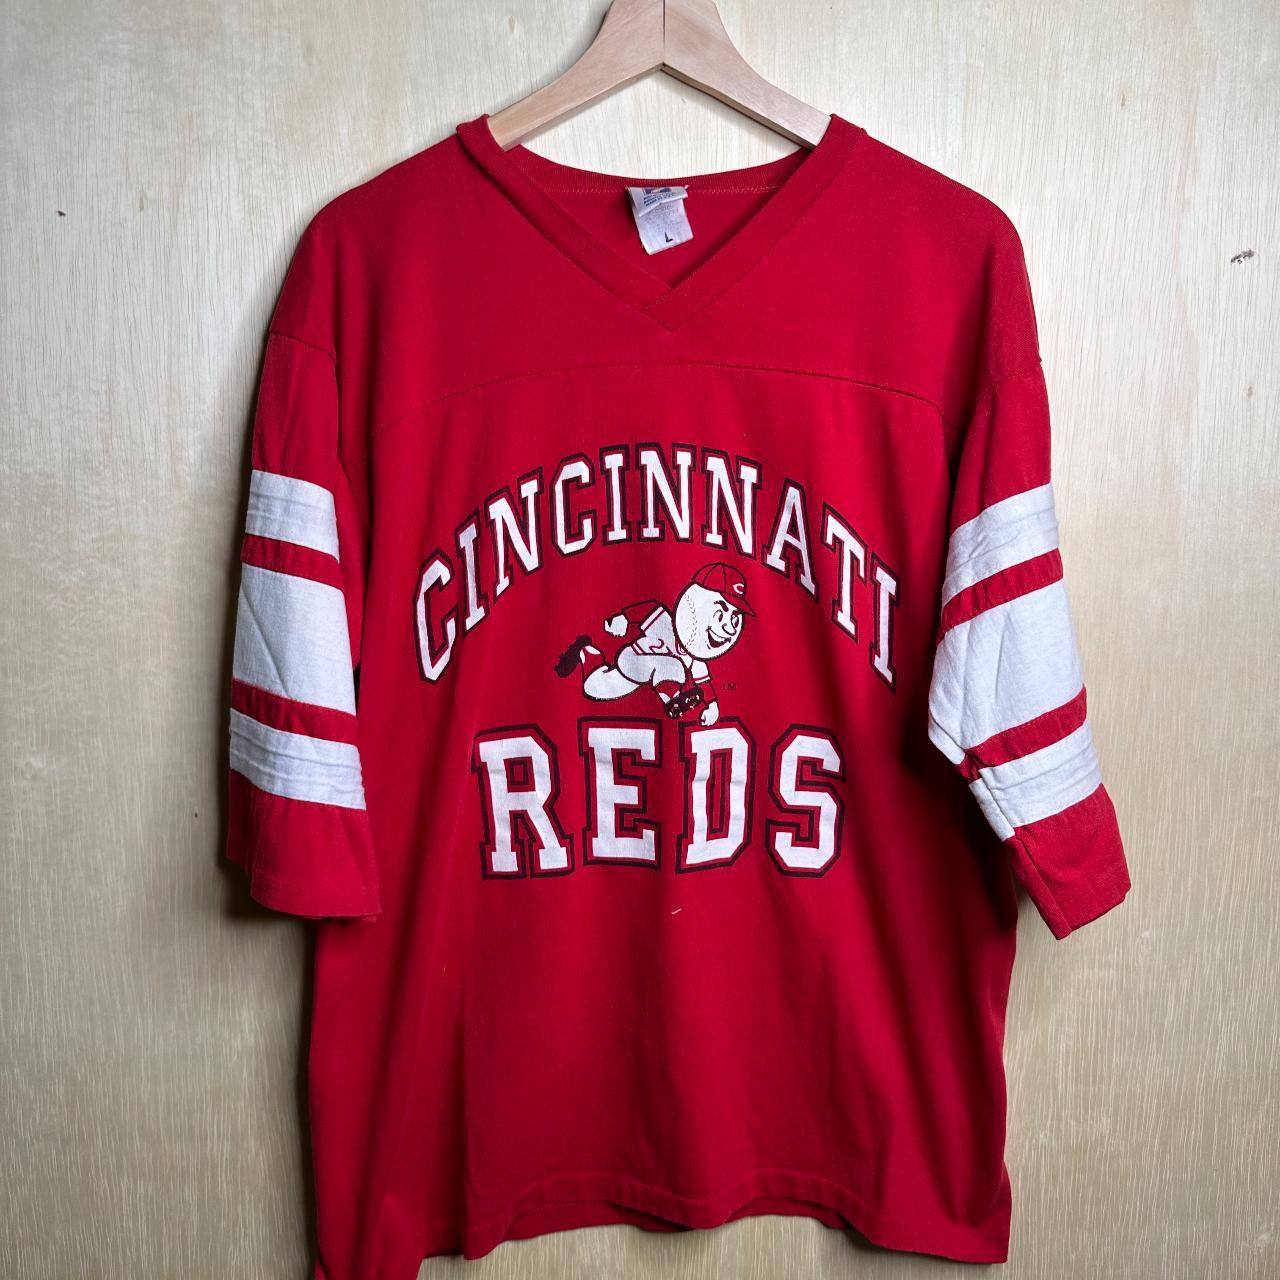 Unisex Vintage 1980s Cincinnati Reds Tee USA